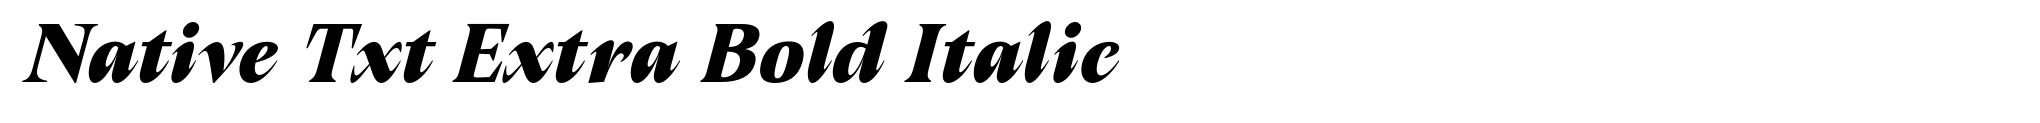 Native Txt Extra Bold Italic image